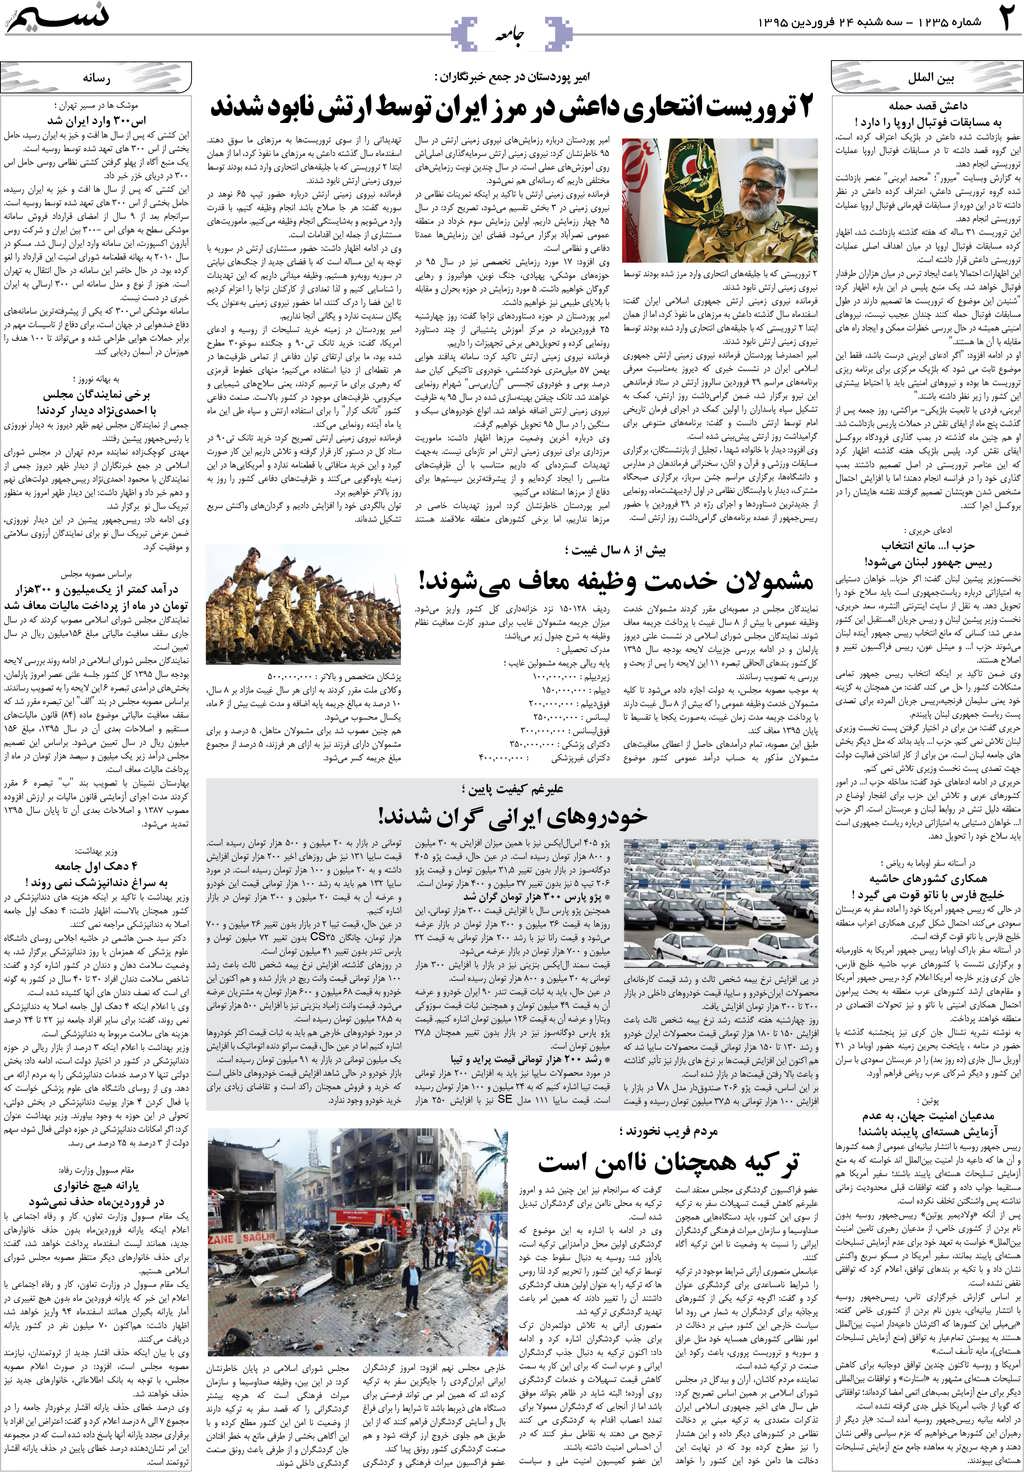 صفحه جامعه روزنامه نسیم شماره 1235